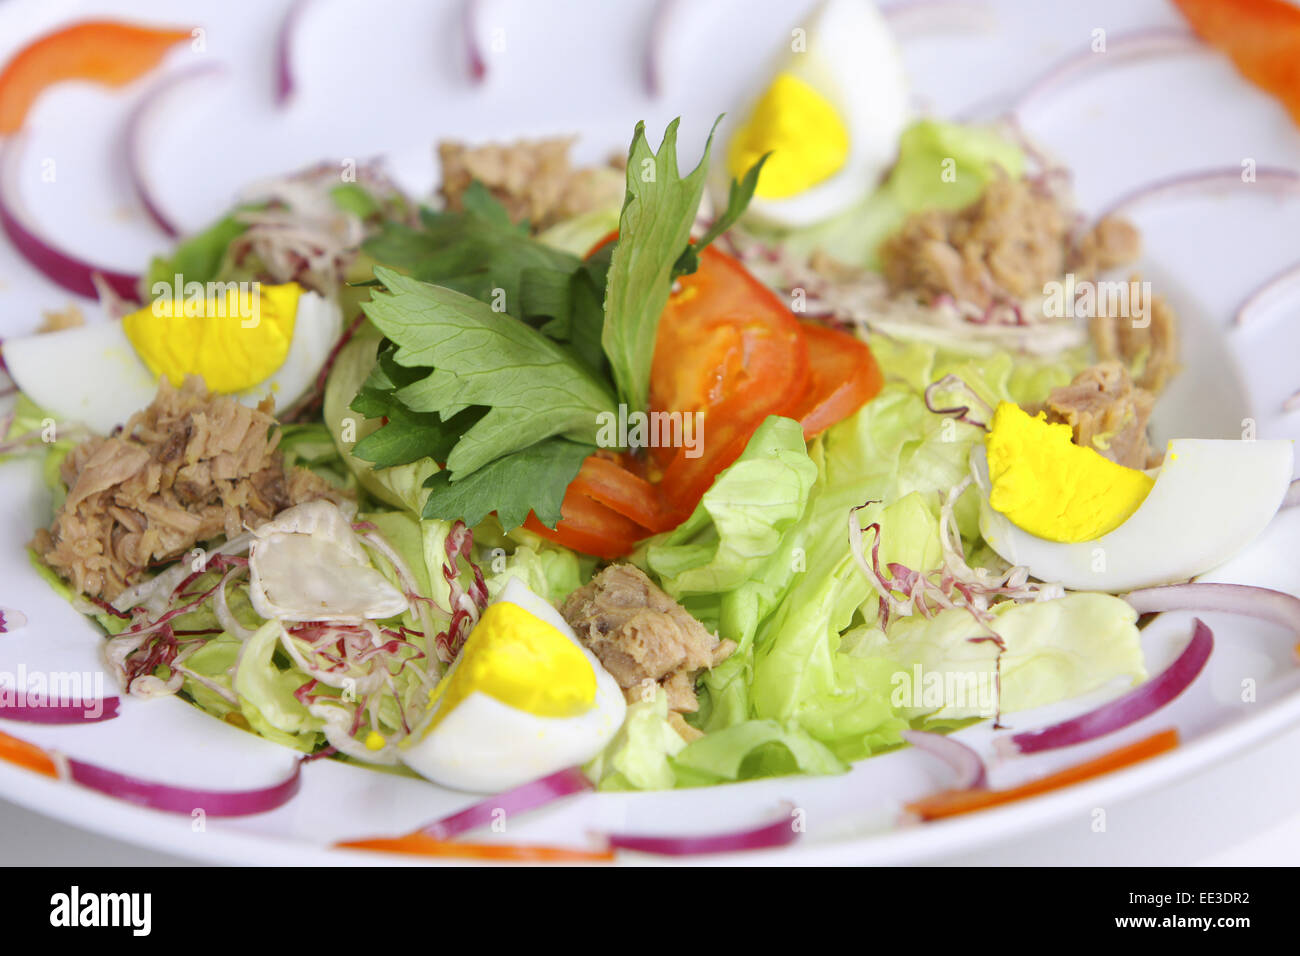 Ein Teller gemischter Salat, Speise, vegetarisch, Salat, Salatblaetter, Thunfisch, Ei, gekocht, Ernaehrung, gesund, gesundheitsb Stock Photo